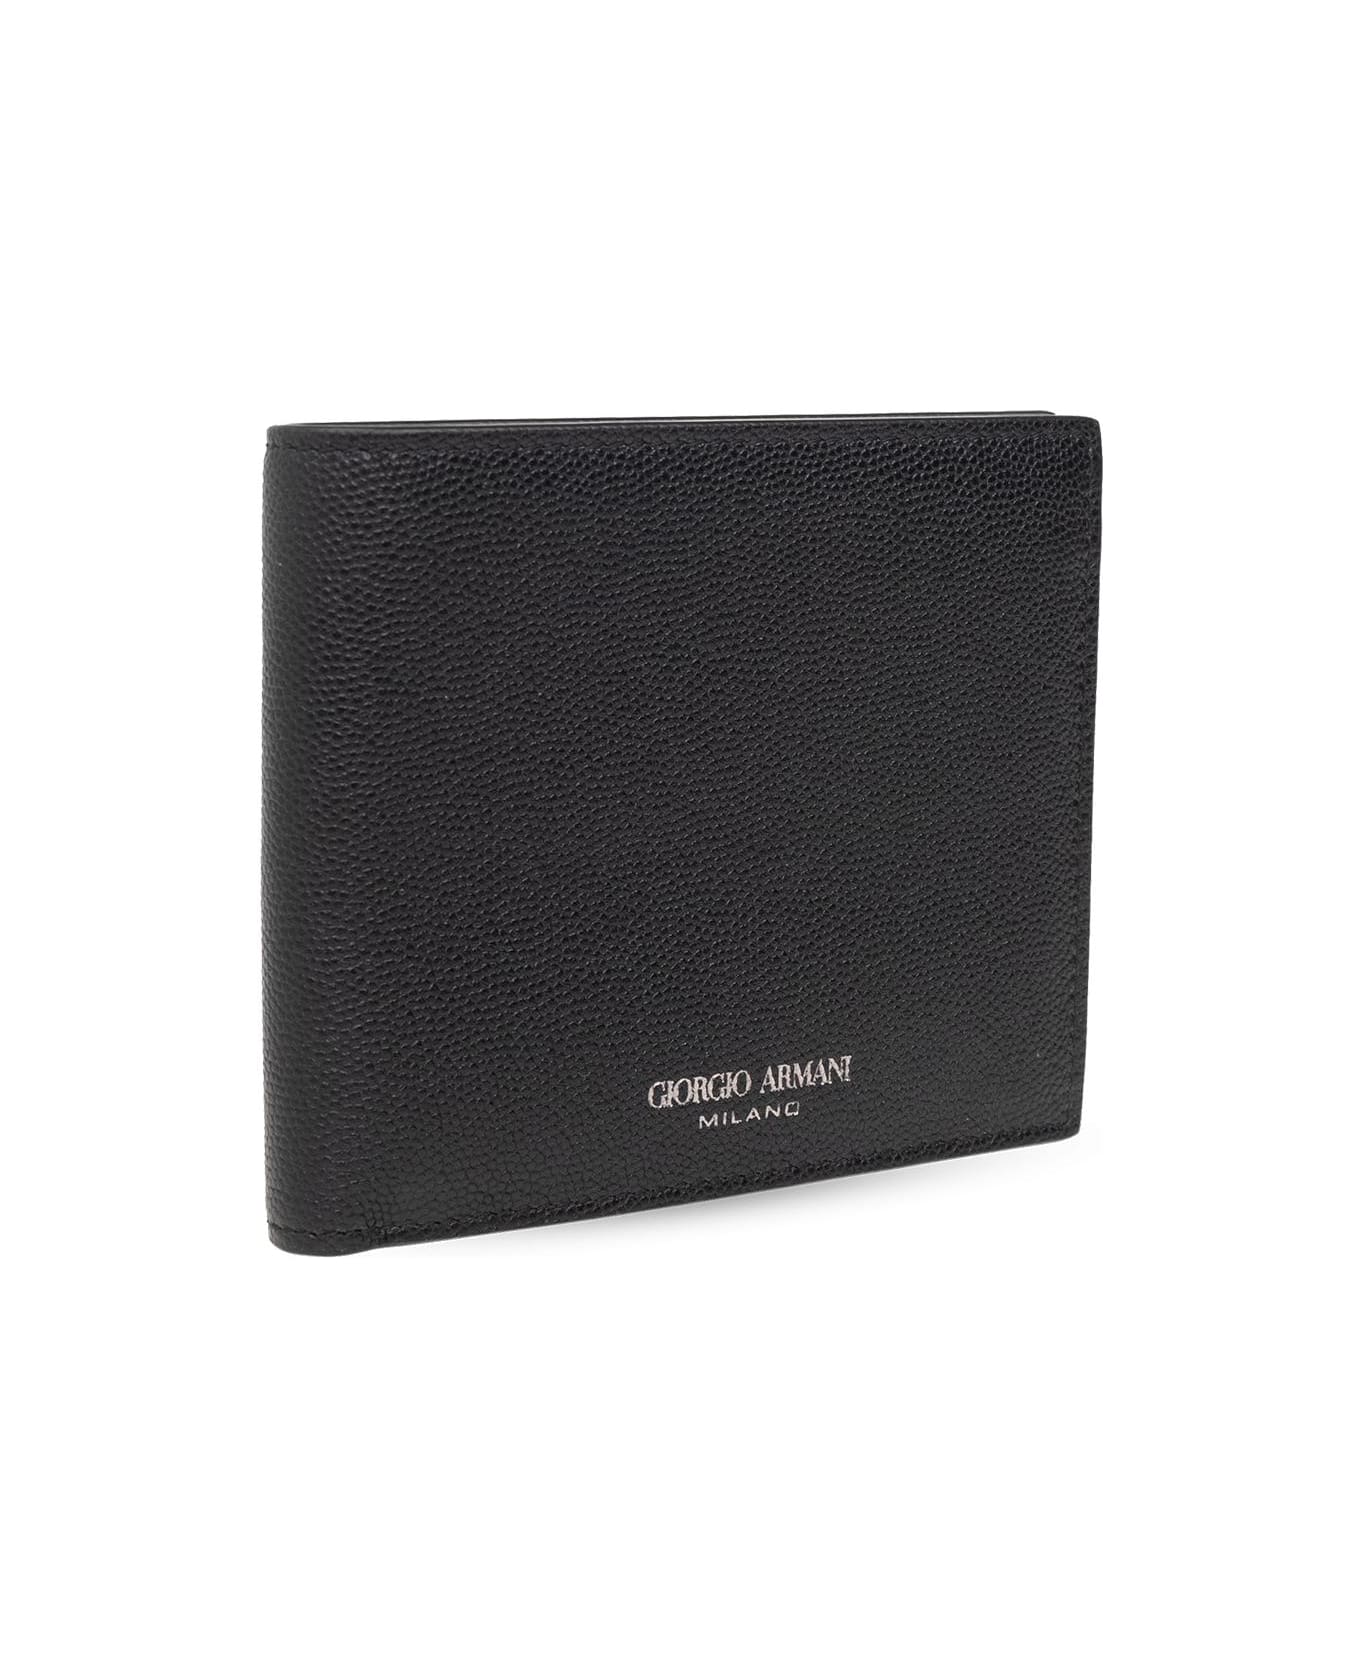 Giorgio Armani Leather Wallet - Nero